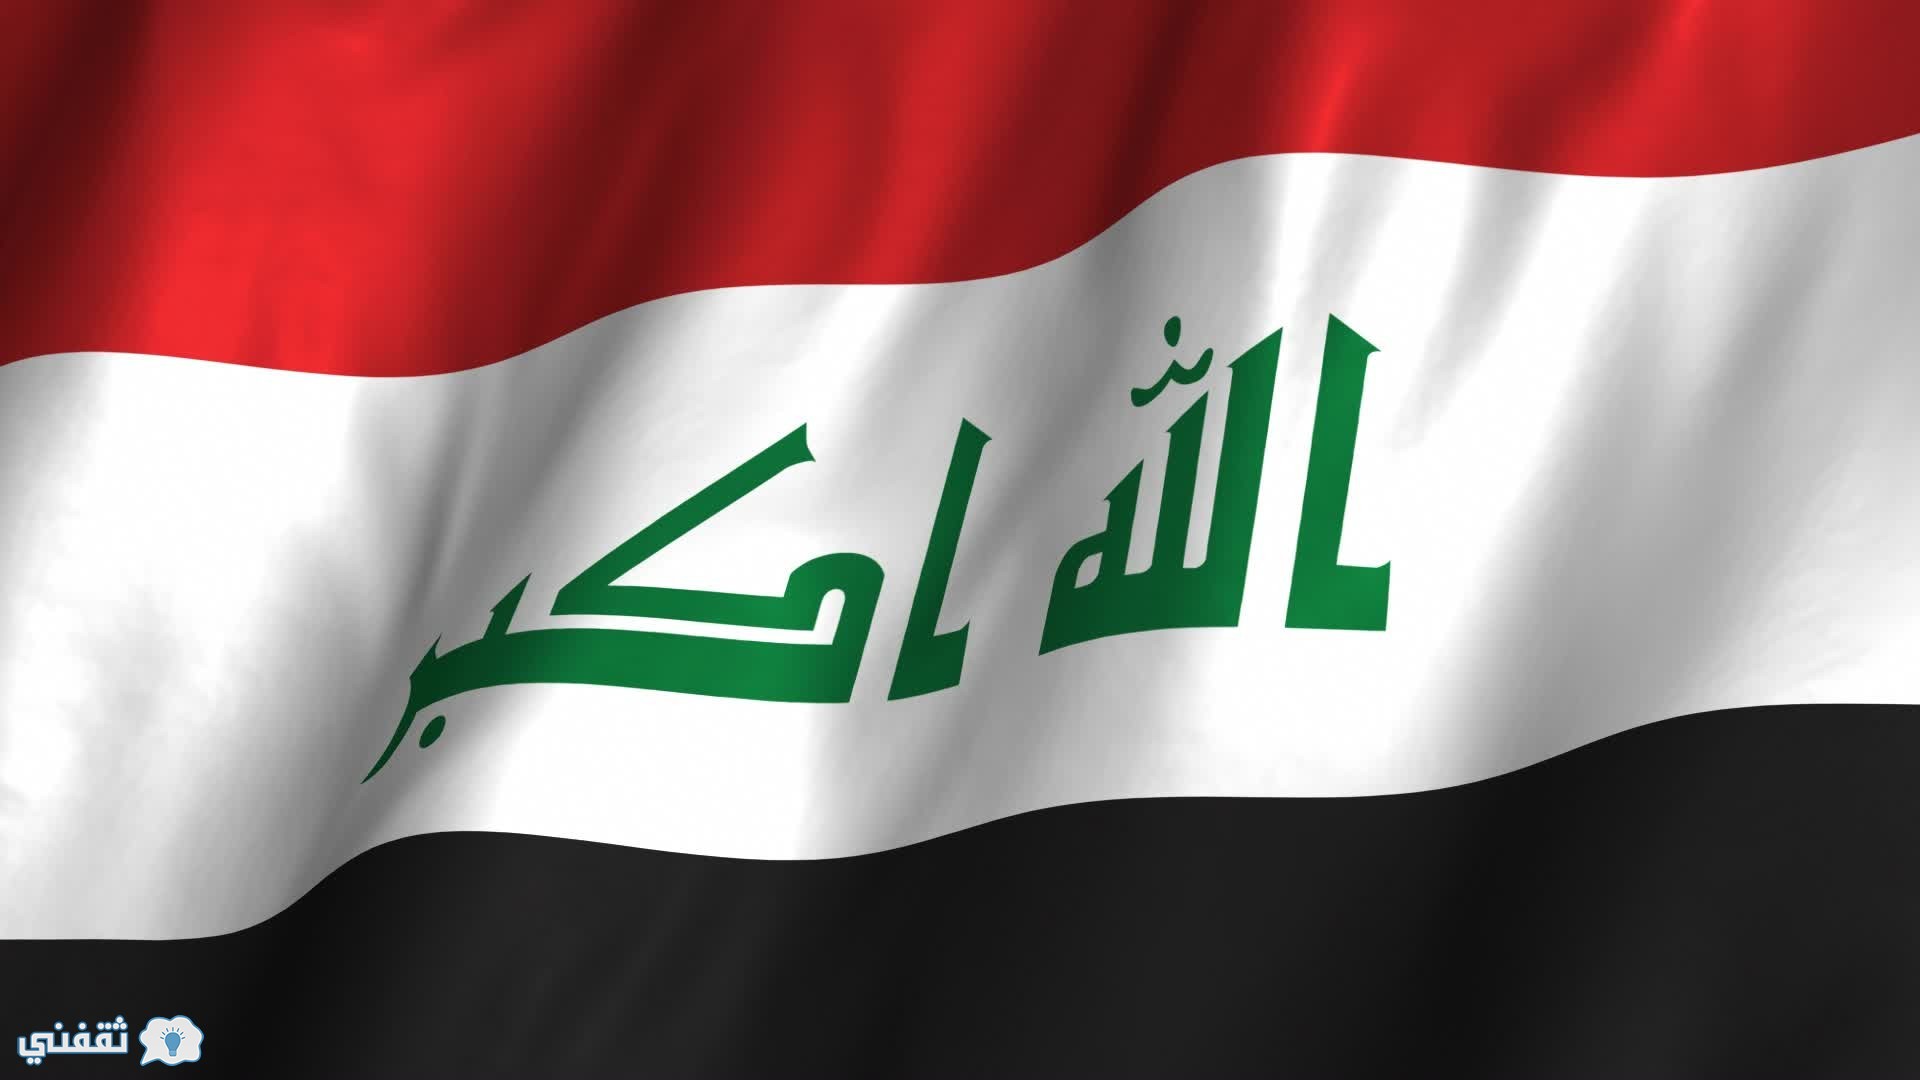 آخر أخبار العراق اليوم 1\ 10\2016 : العبادى يصرح انه ليس سوبر مان حتى يدير البلاد بمفرده